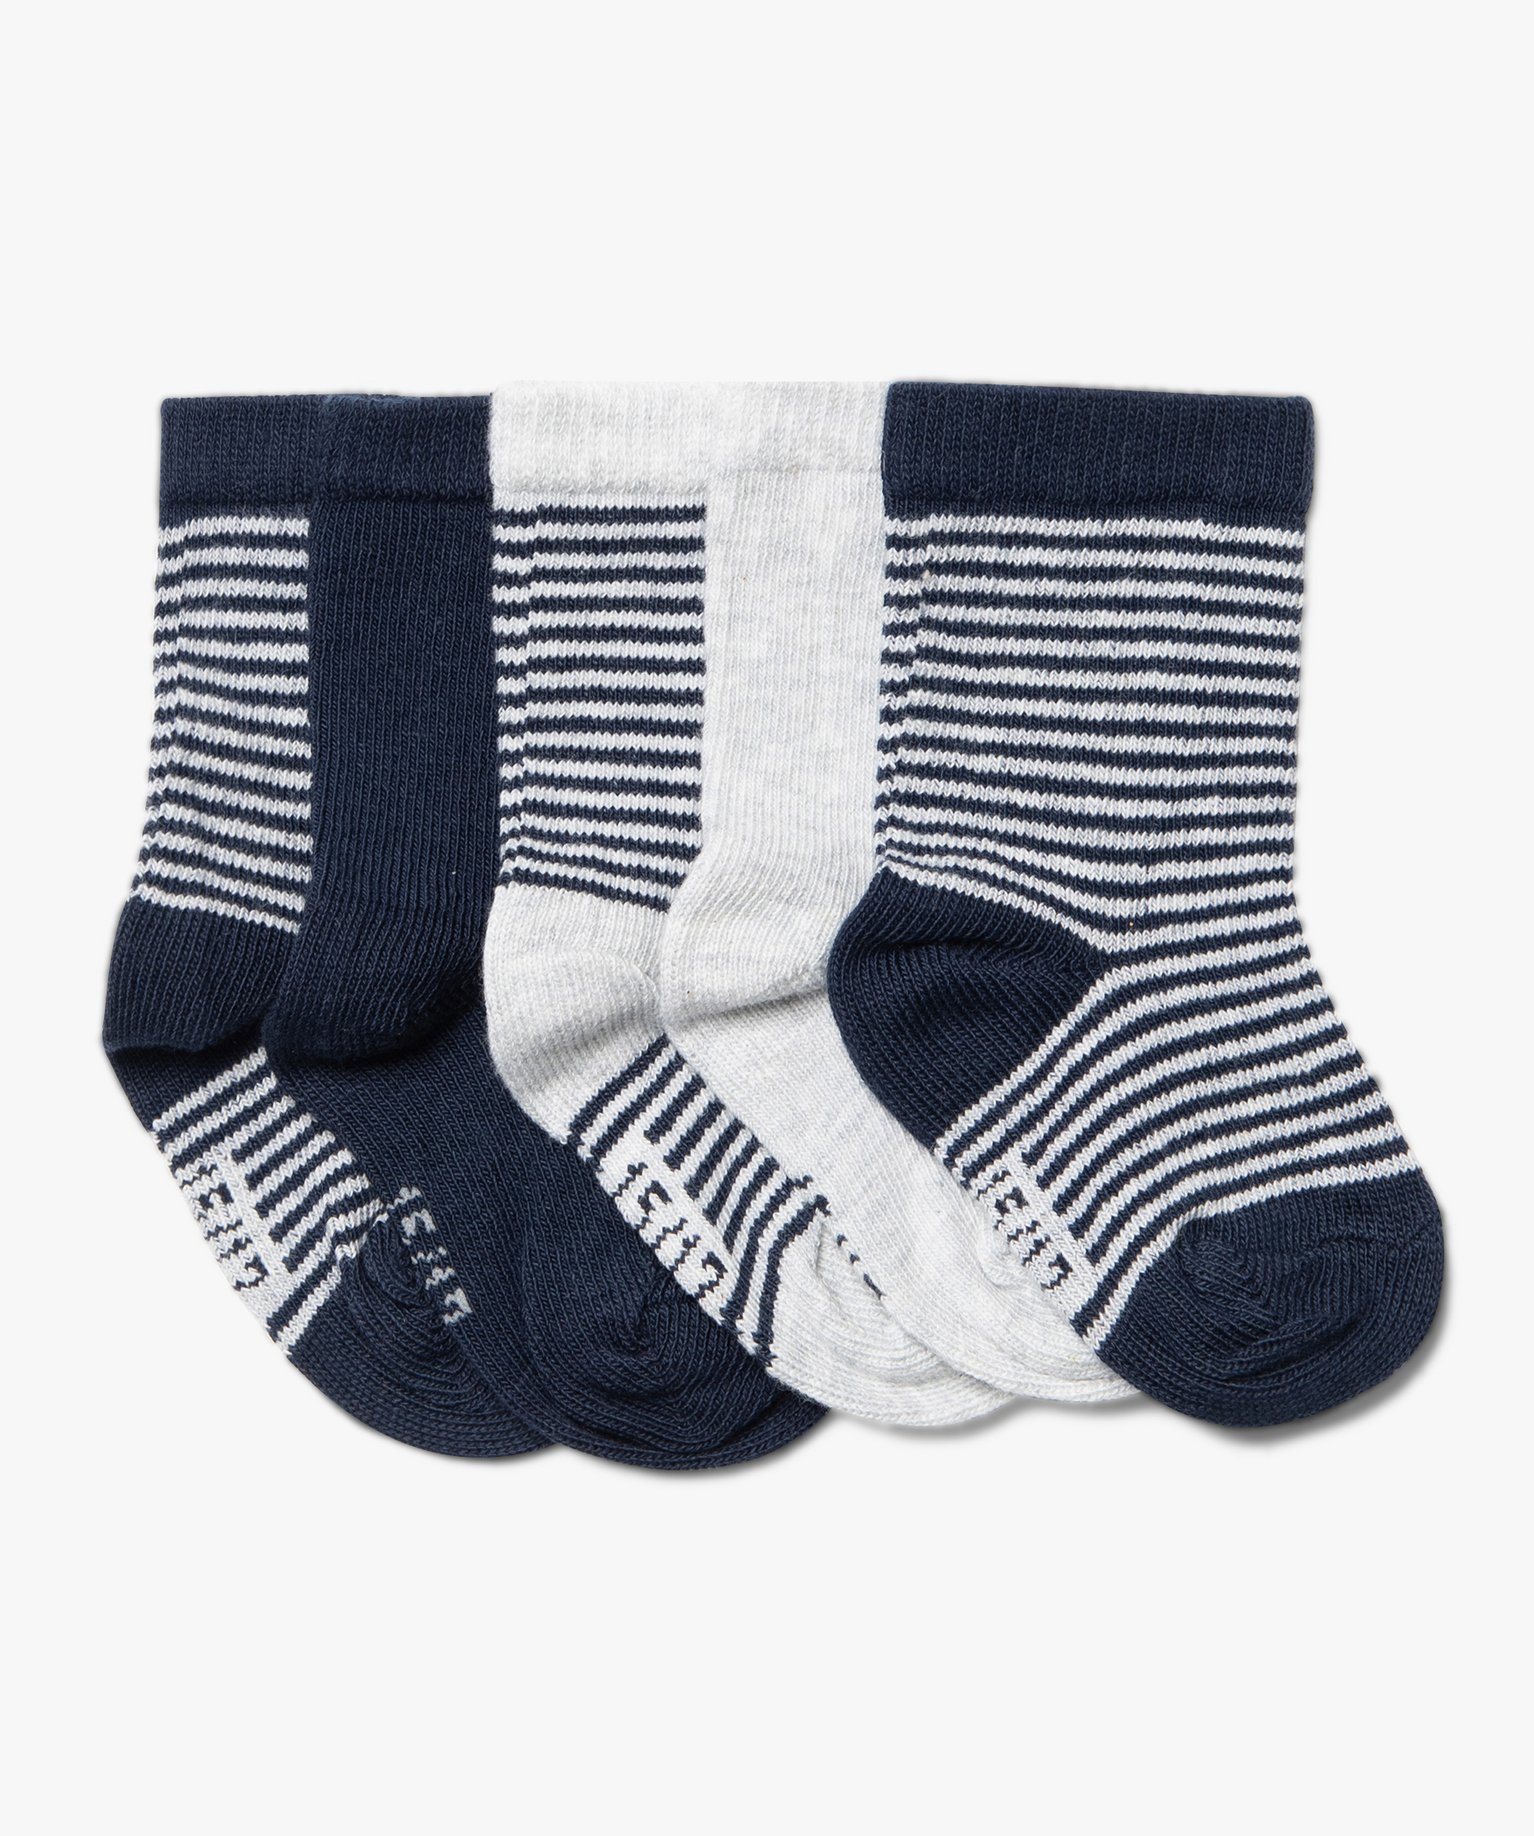 Chaussettes à rayures bébé (lot de 5) - 15/17 - bleu fonce - GEMO